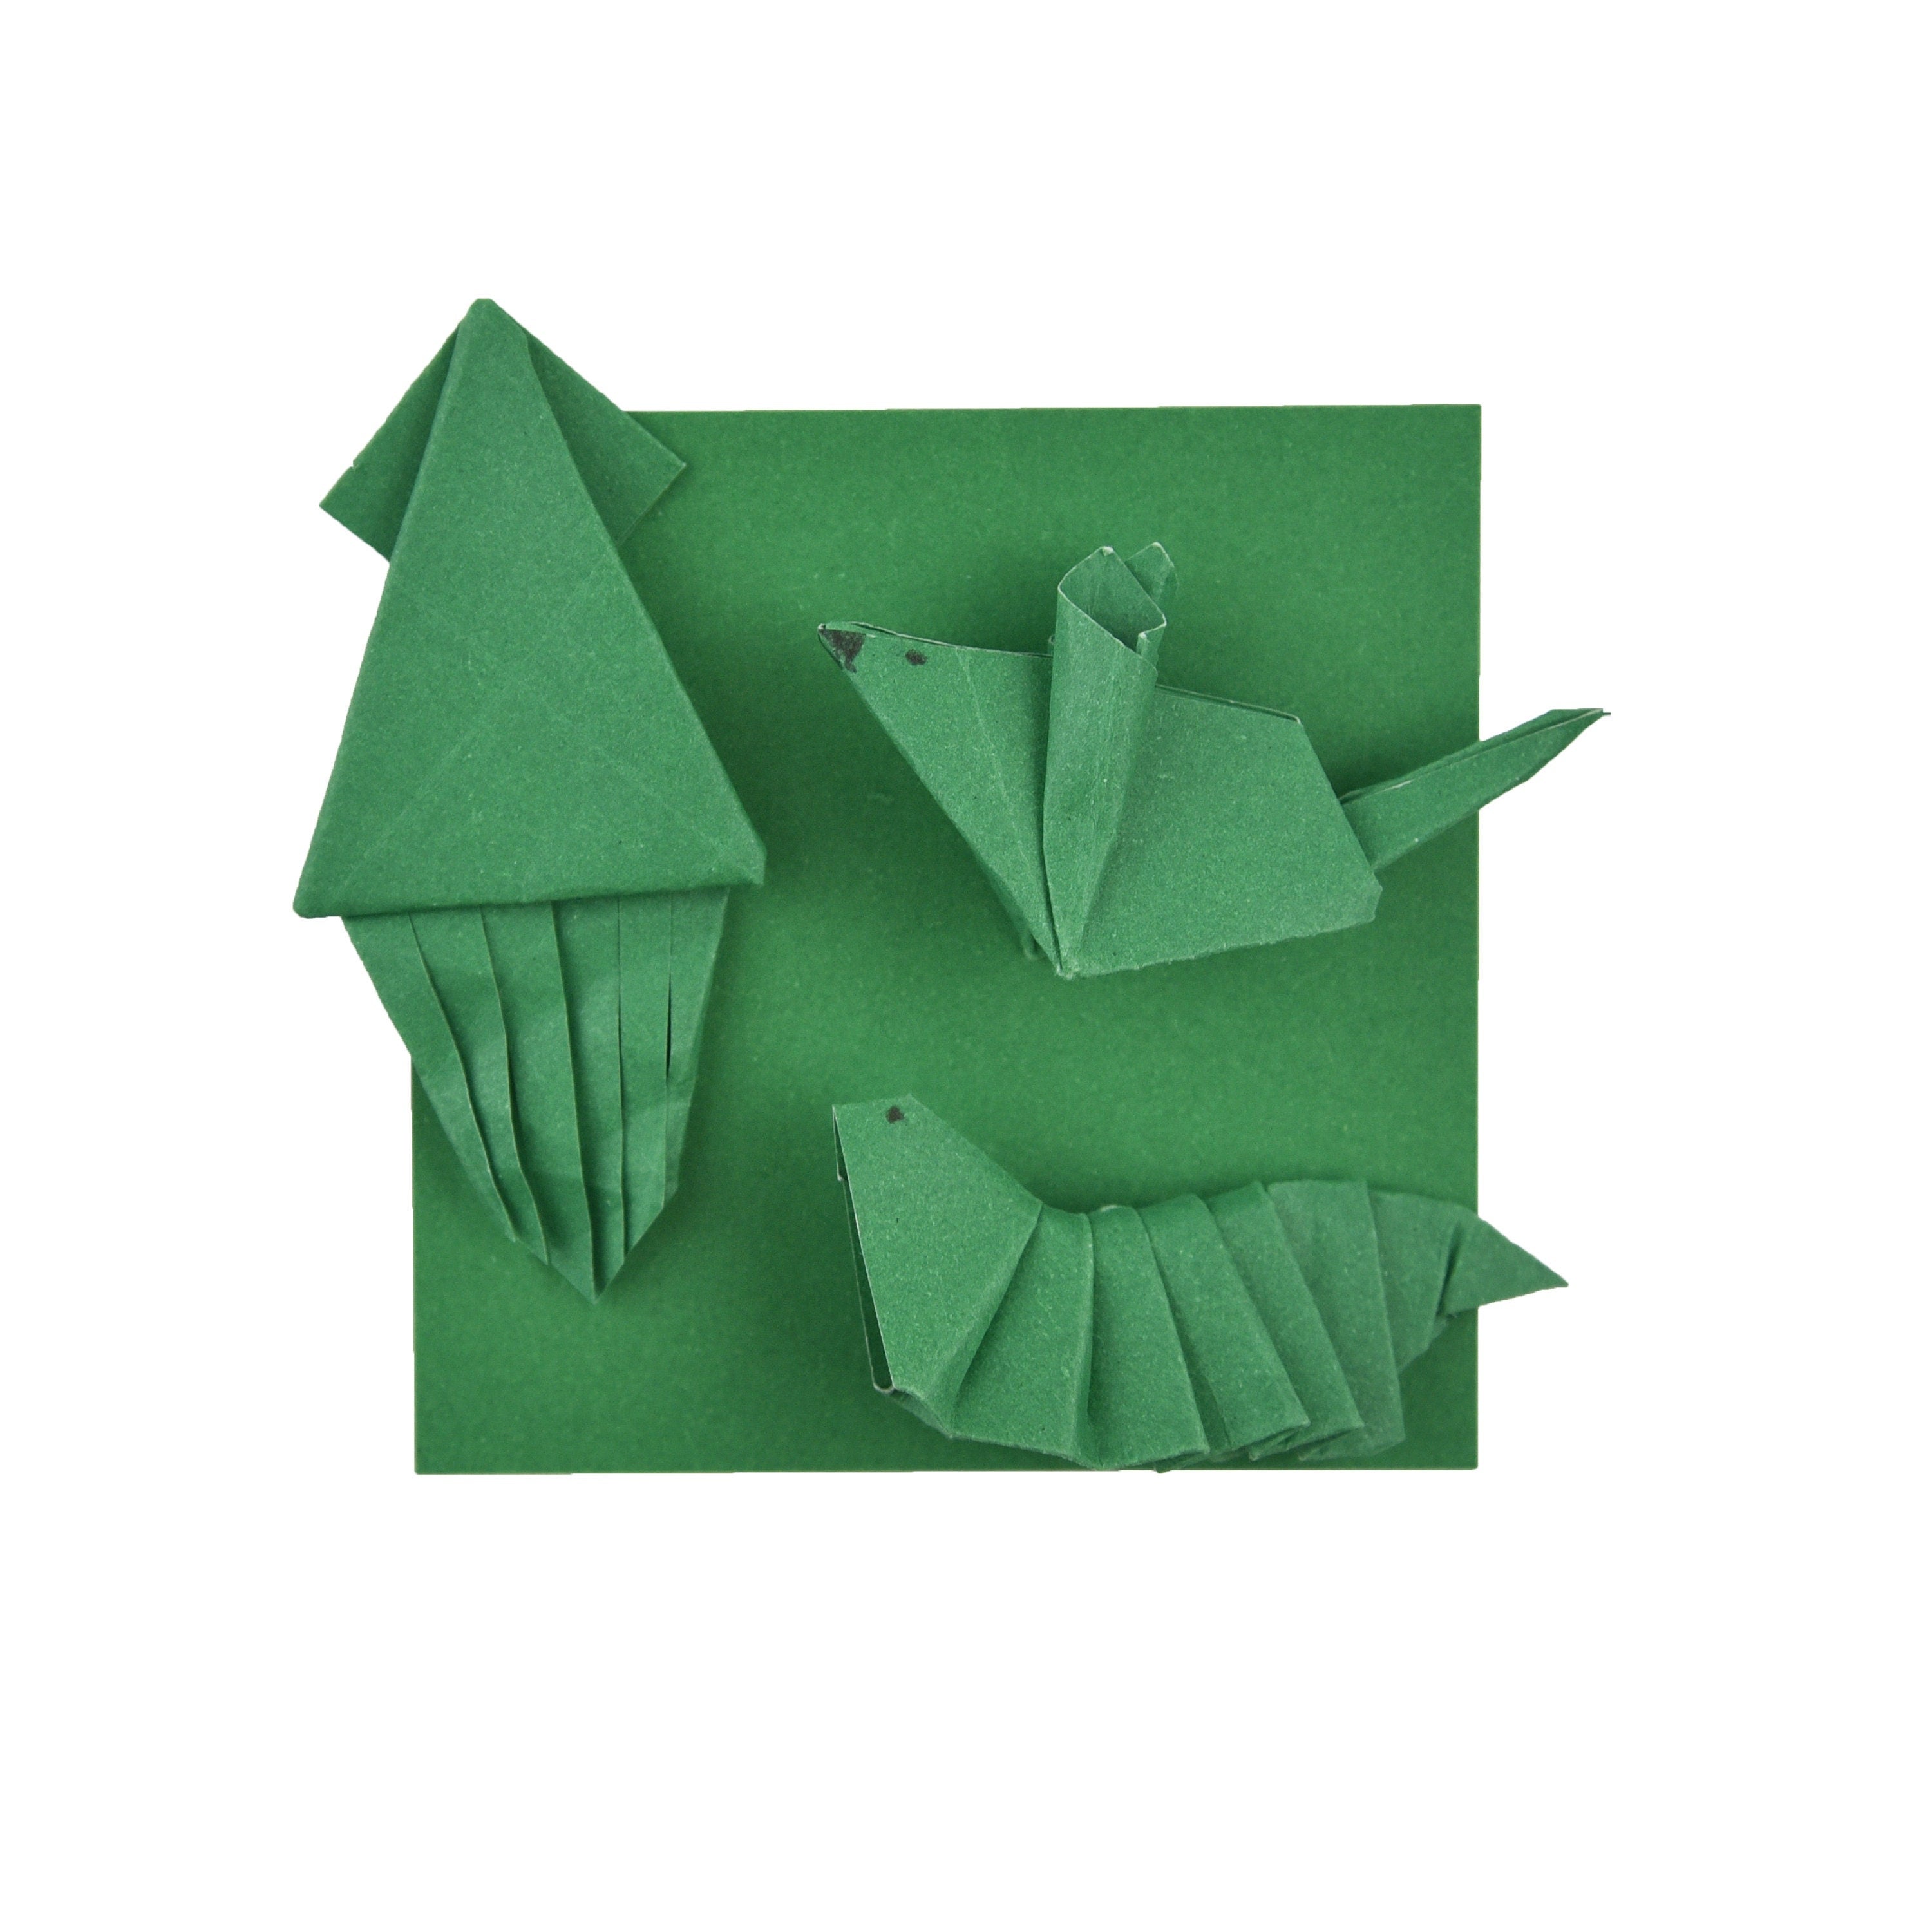 100 fogli di carta verde per origami - 6 x 6 pollici - confezione di carta quadrata per piegare, gru origami e decorazioni - S24